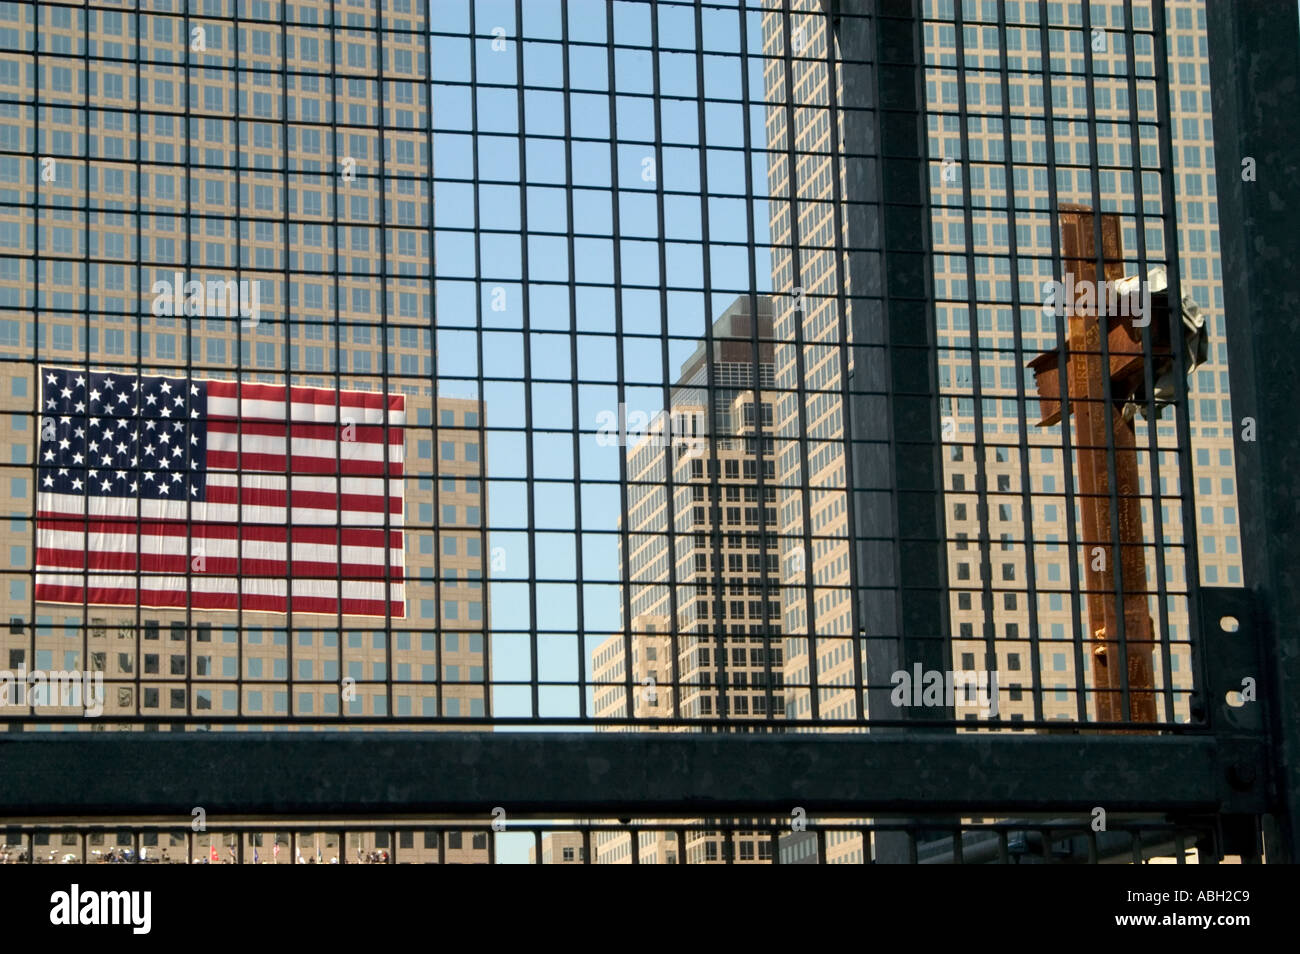 Ein Blick durch ein Gitter Zaun eines großen verrostet Kreuz gemacht von Trägern aus der zerstörten Zwillingstürme und eine große amerikanische Flagge-Witz Stockfoto